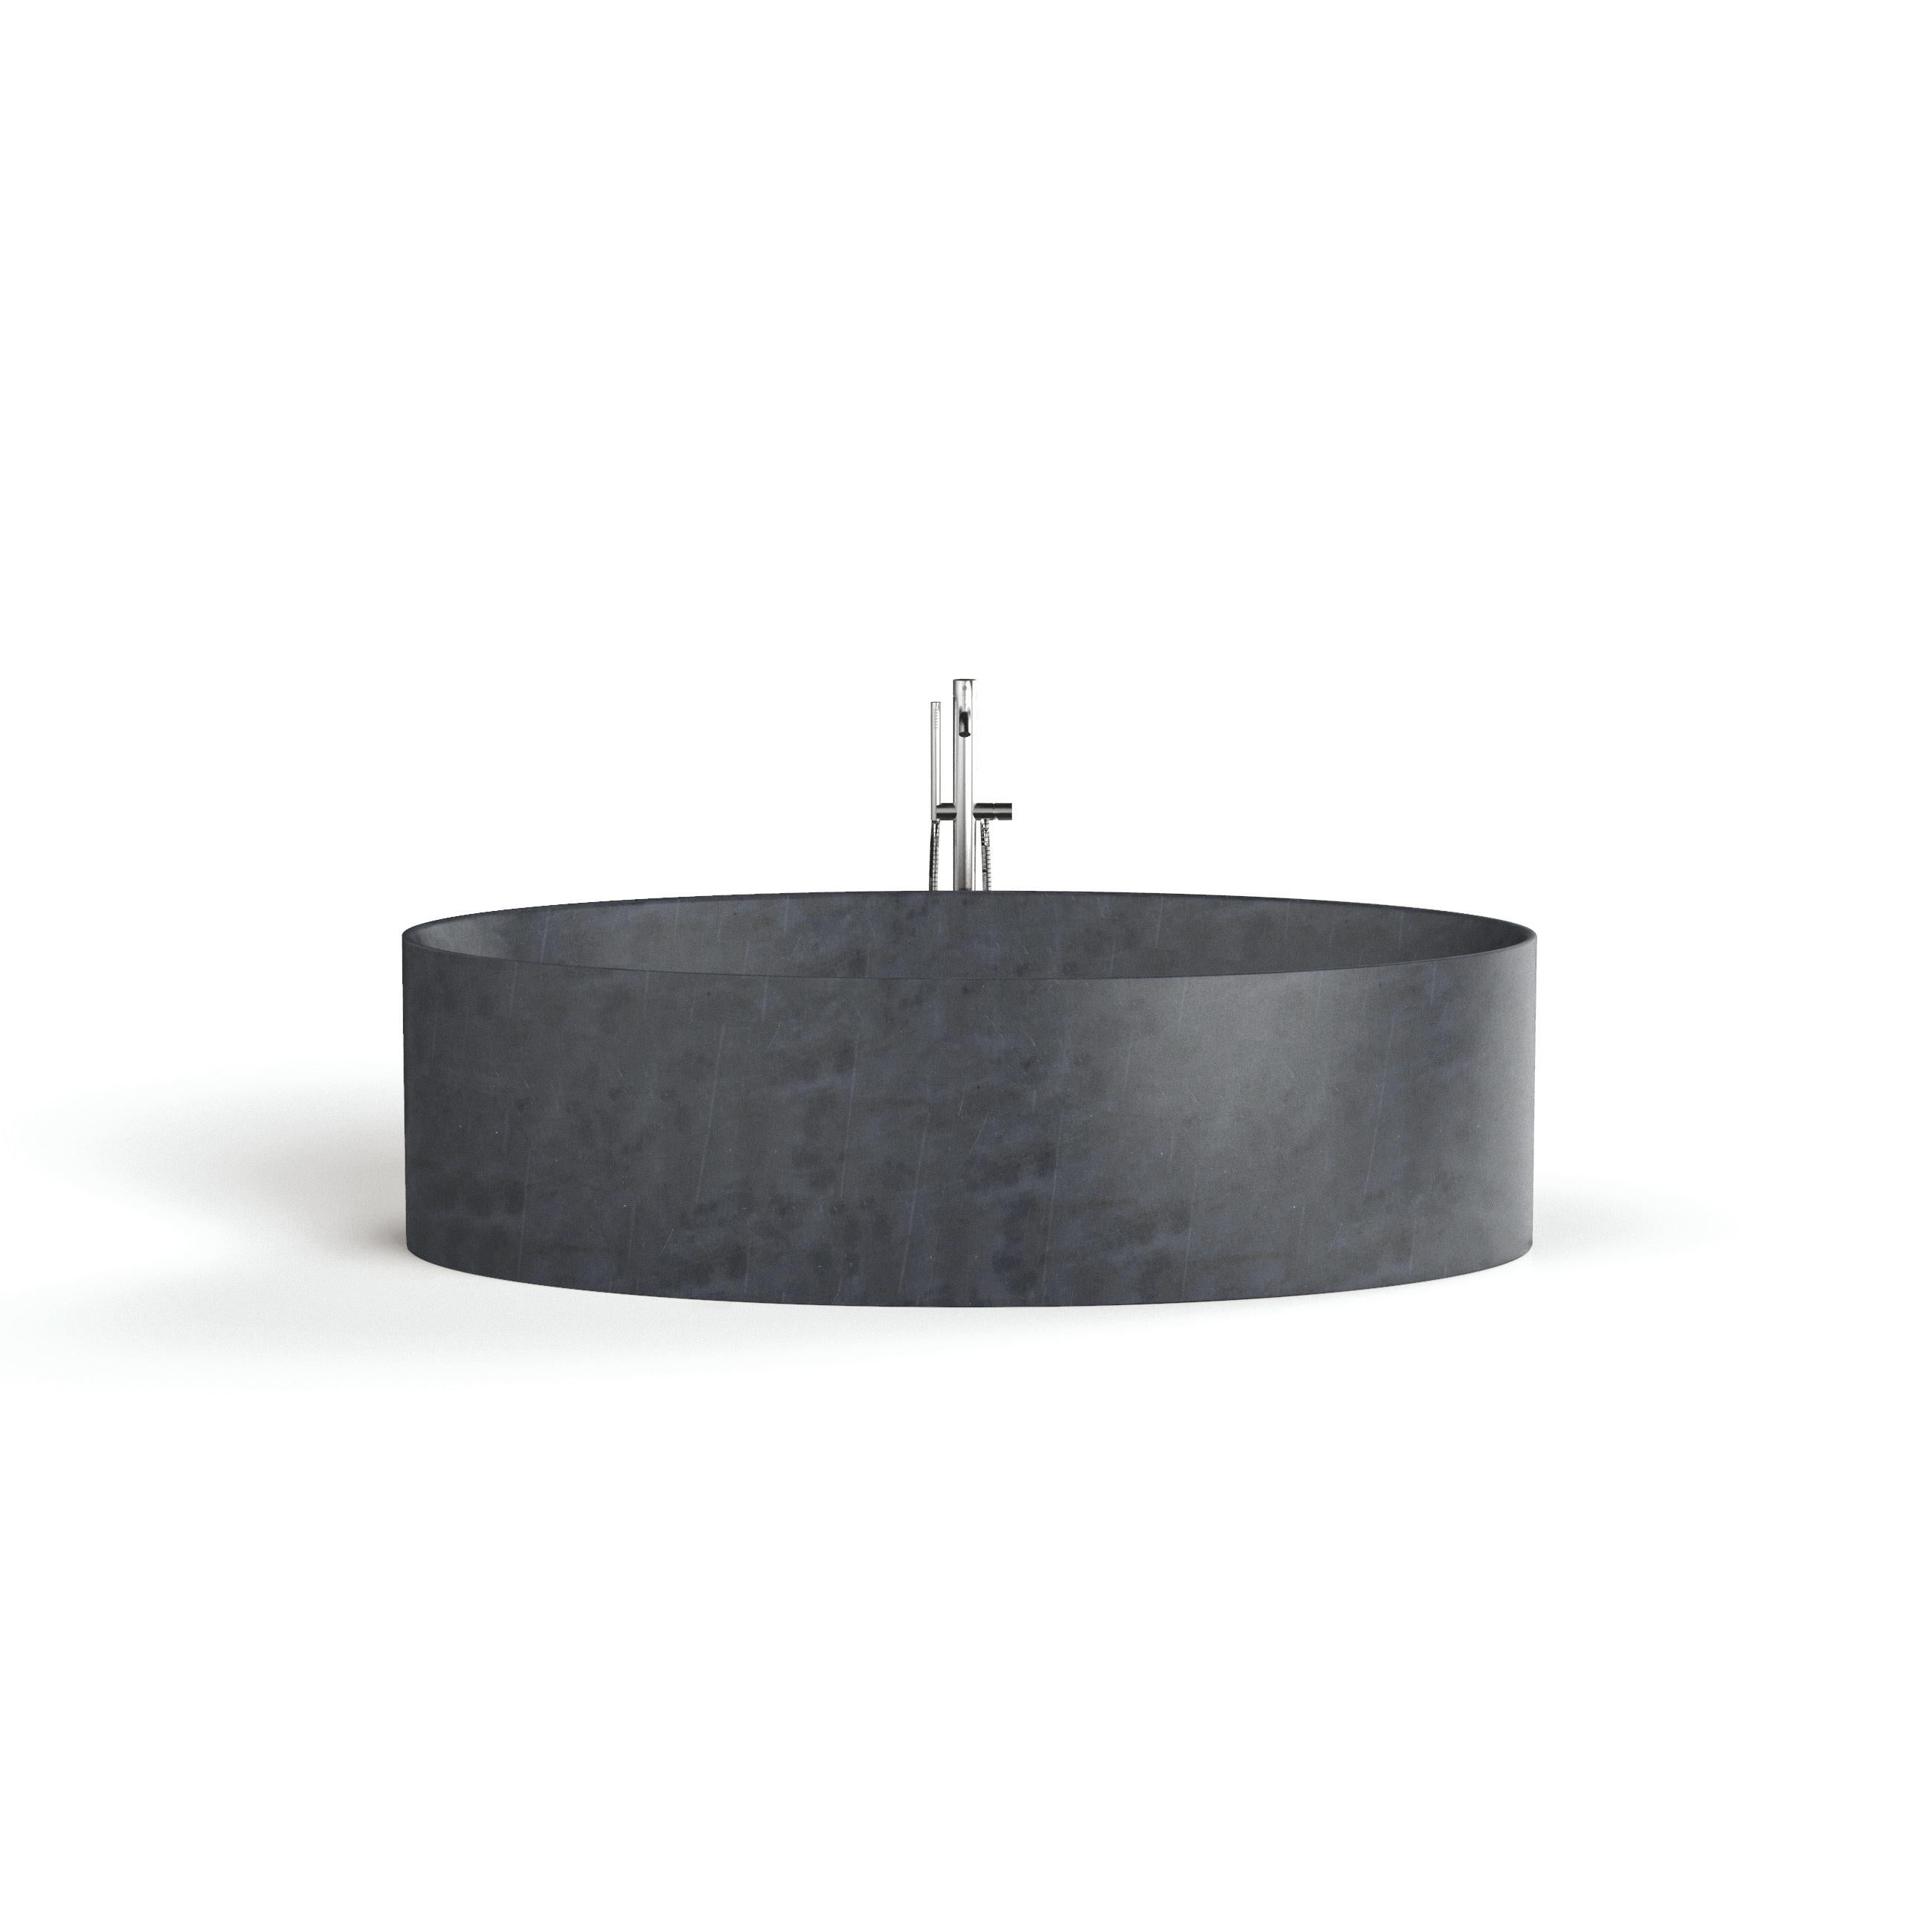 Entity Ovale bath by Marmi Serafini
MATERIAL : Marbre Pietra Lavica.
Dimensions : D 105 x L 180 x H 50 cm
Disponible dans d'autres marbres.
Le robinet n'est pas inclus.

Entièrement réalisée en une seule pièce de pierre, avec le cache-bonde assorti,